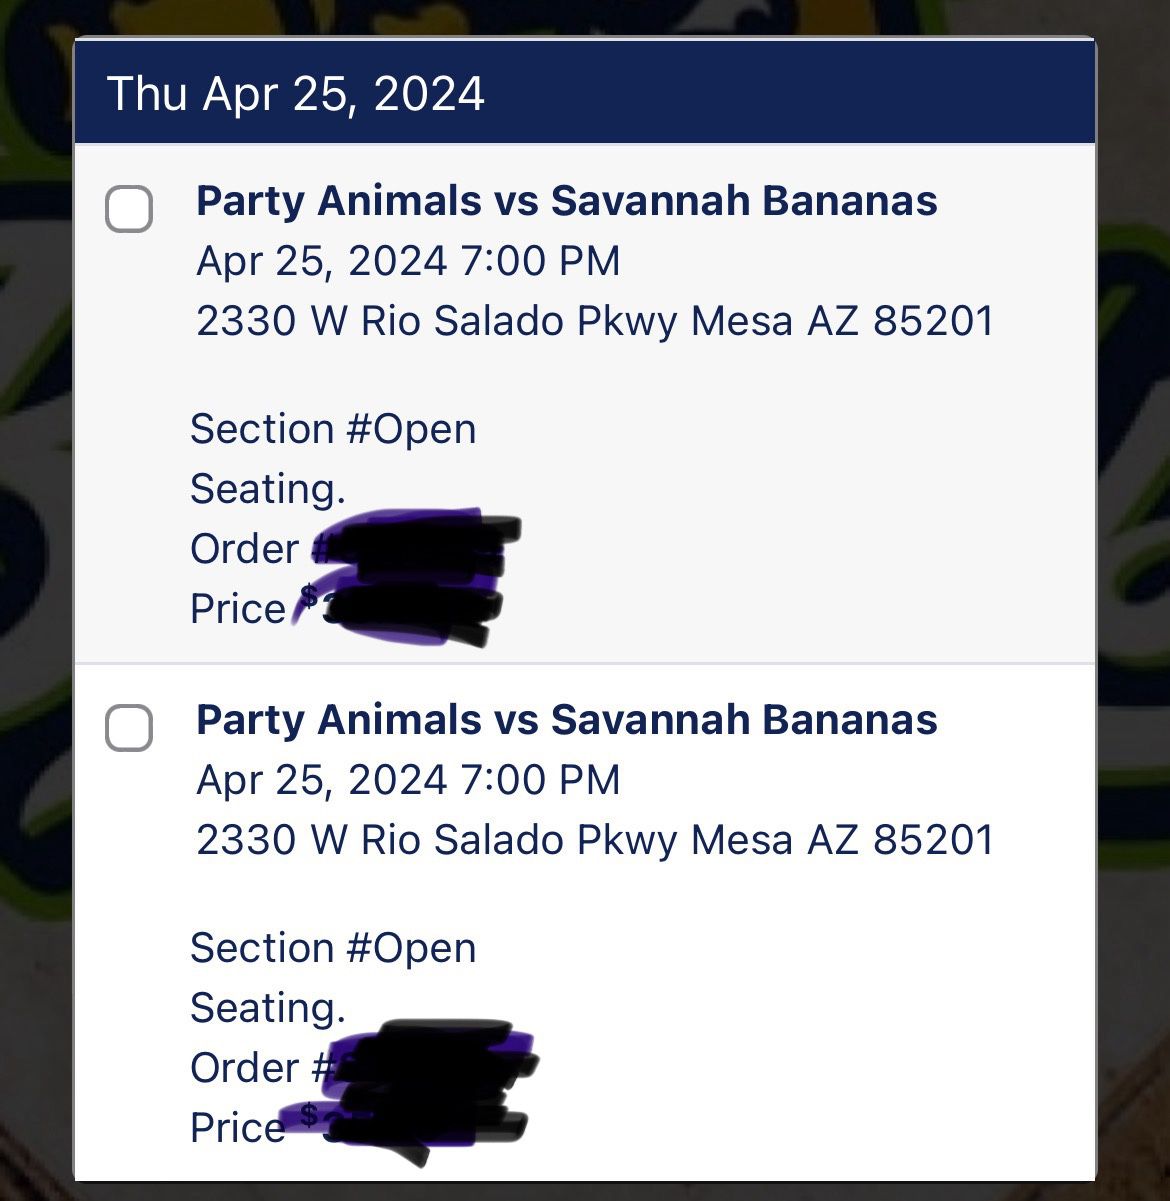 Savannah banana 4/25